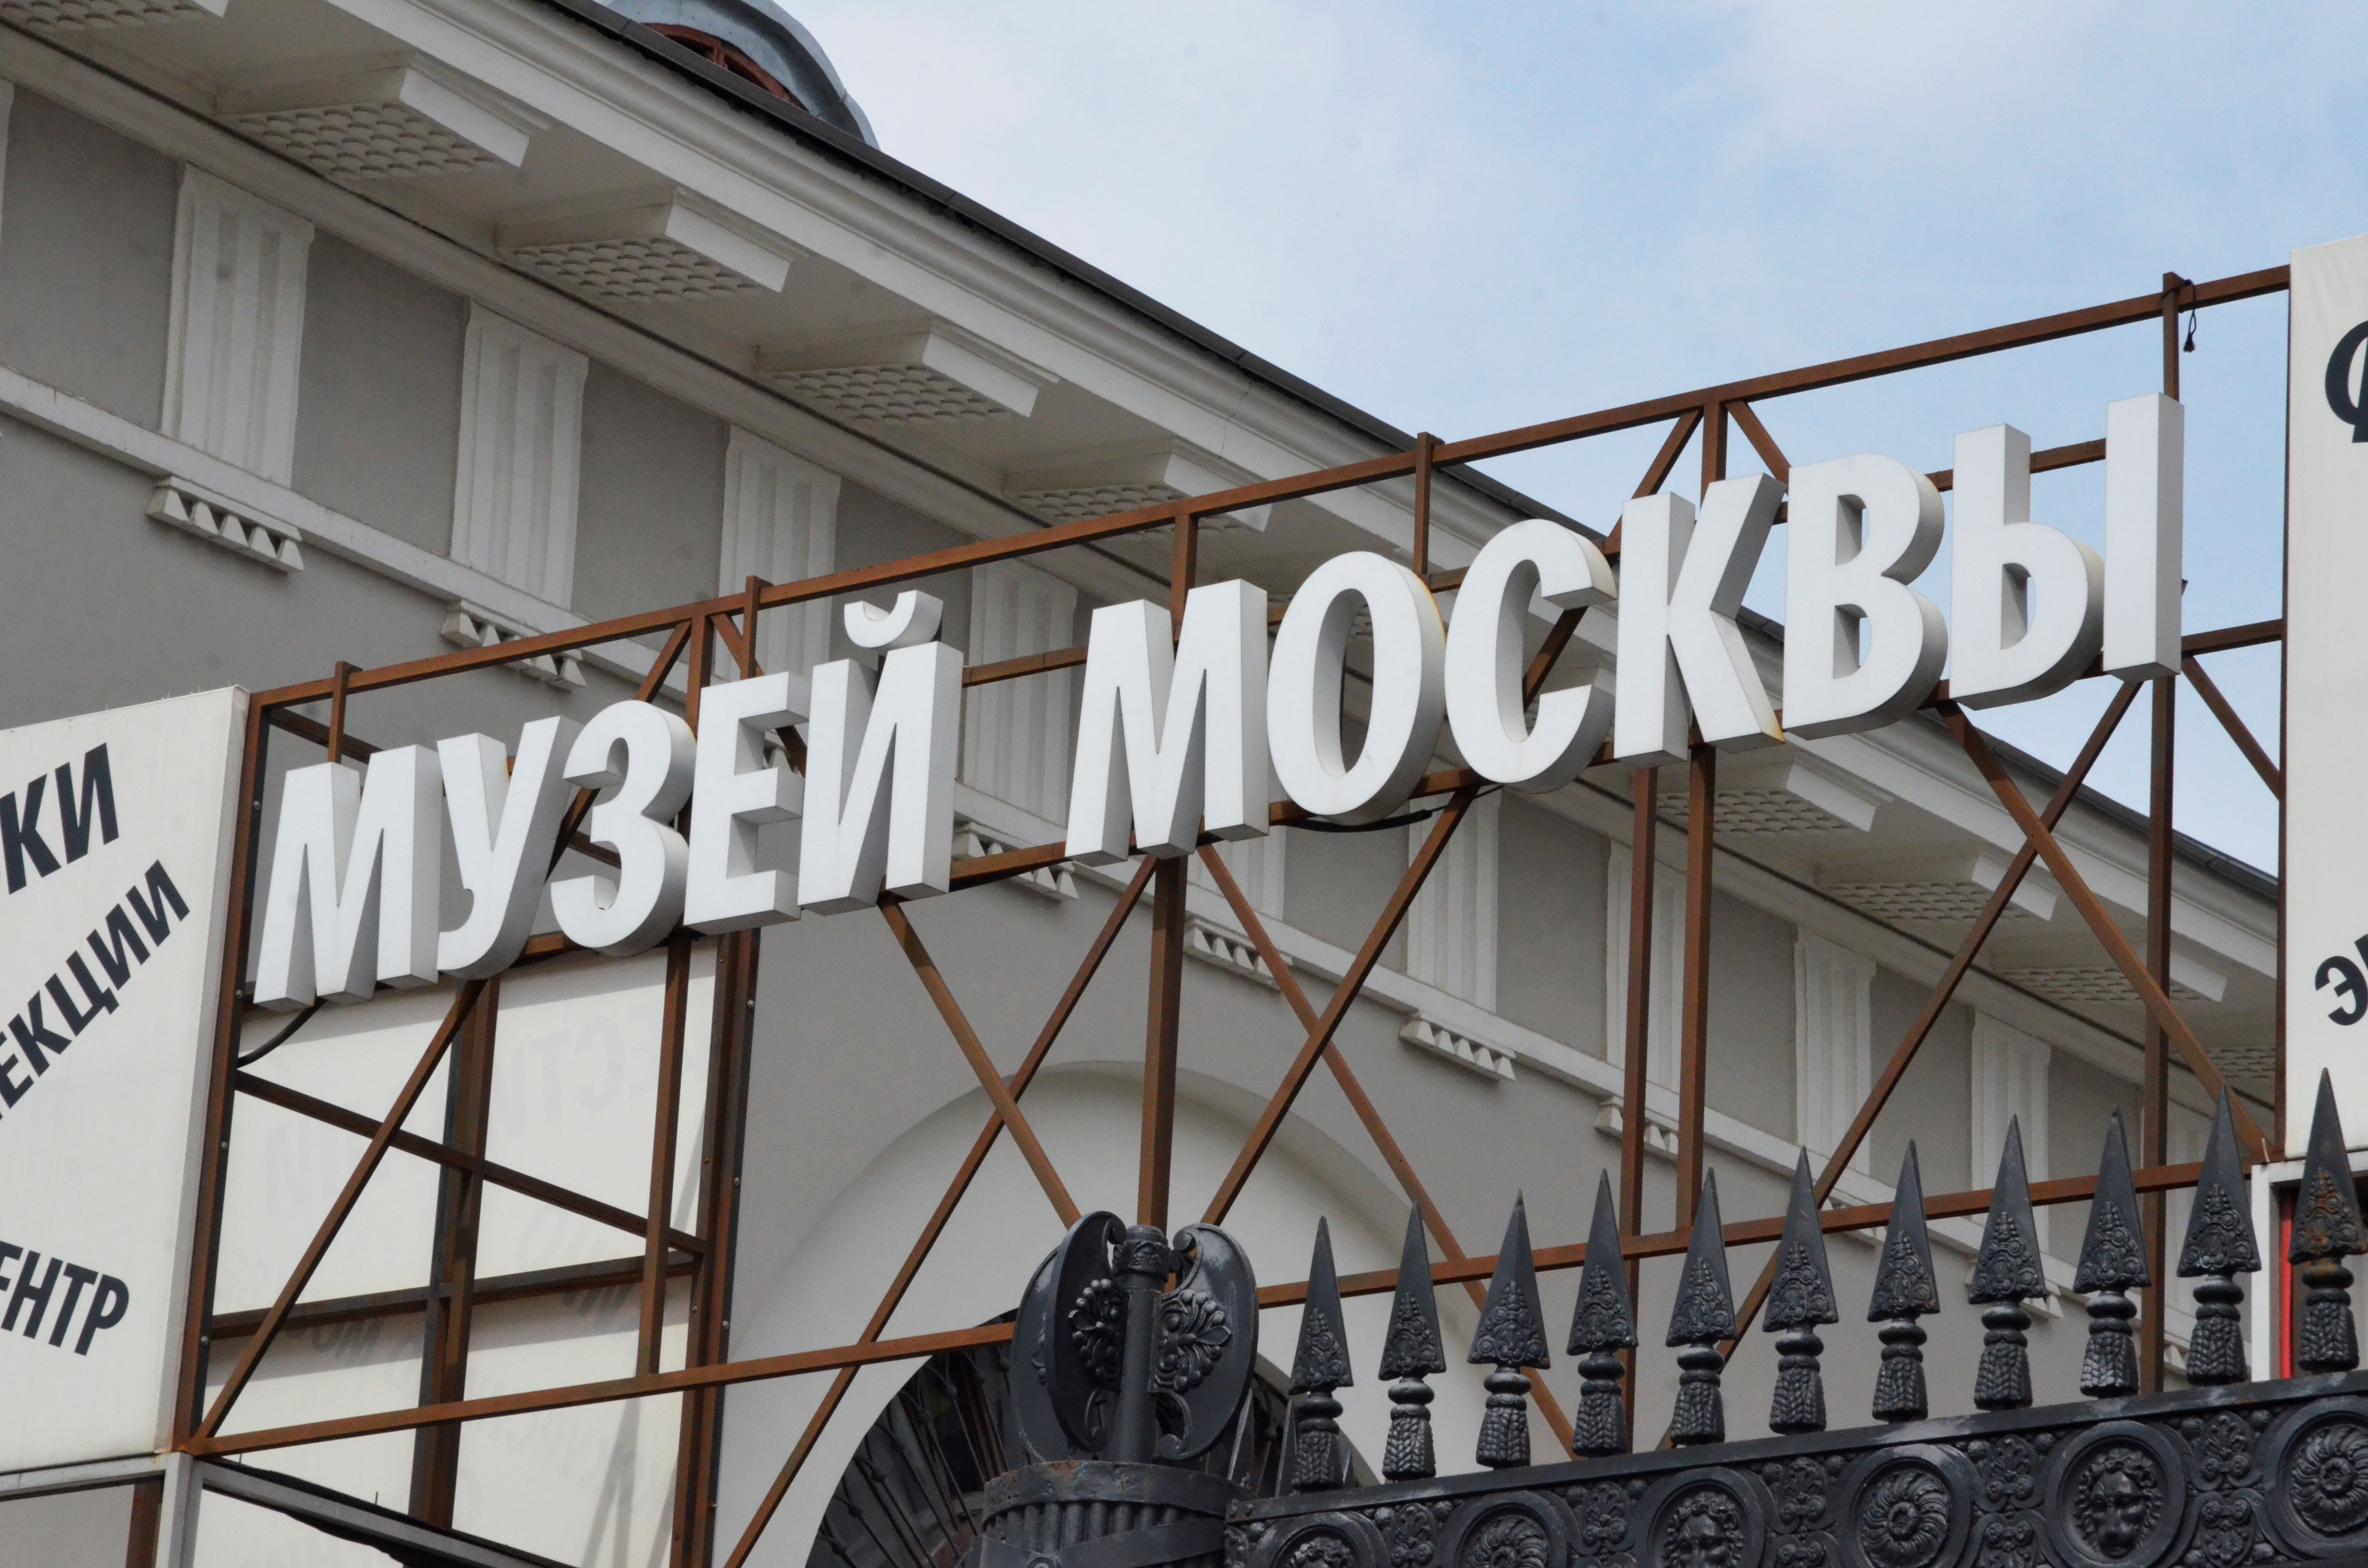 Представители Музея Москвы пригласили пользователей сети на «Новогодний маскарад». Фото: Анна Быкова